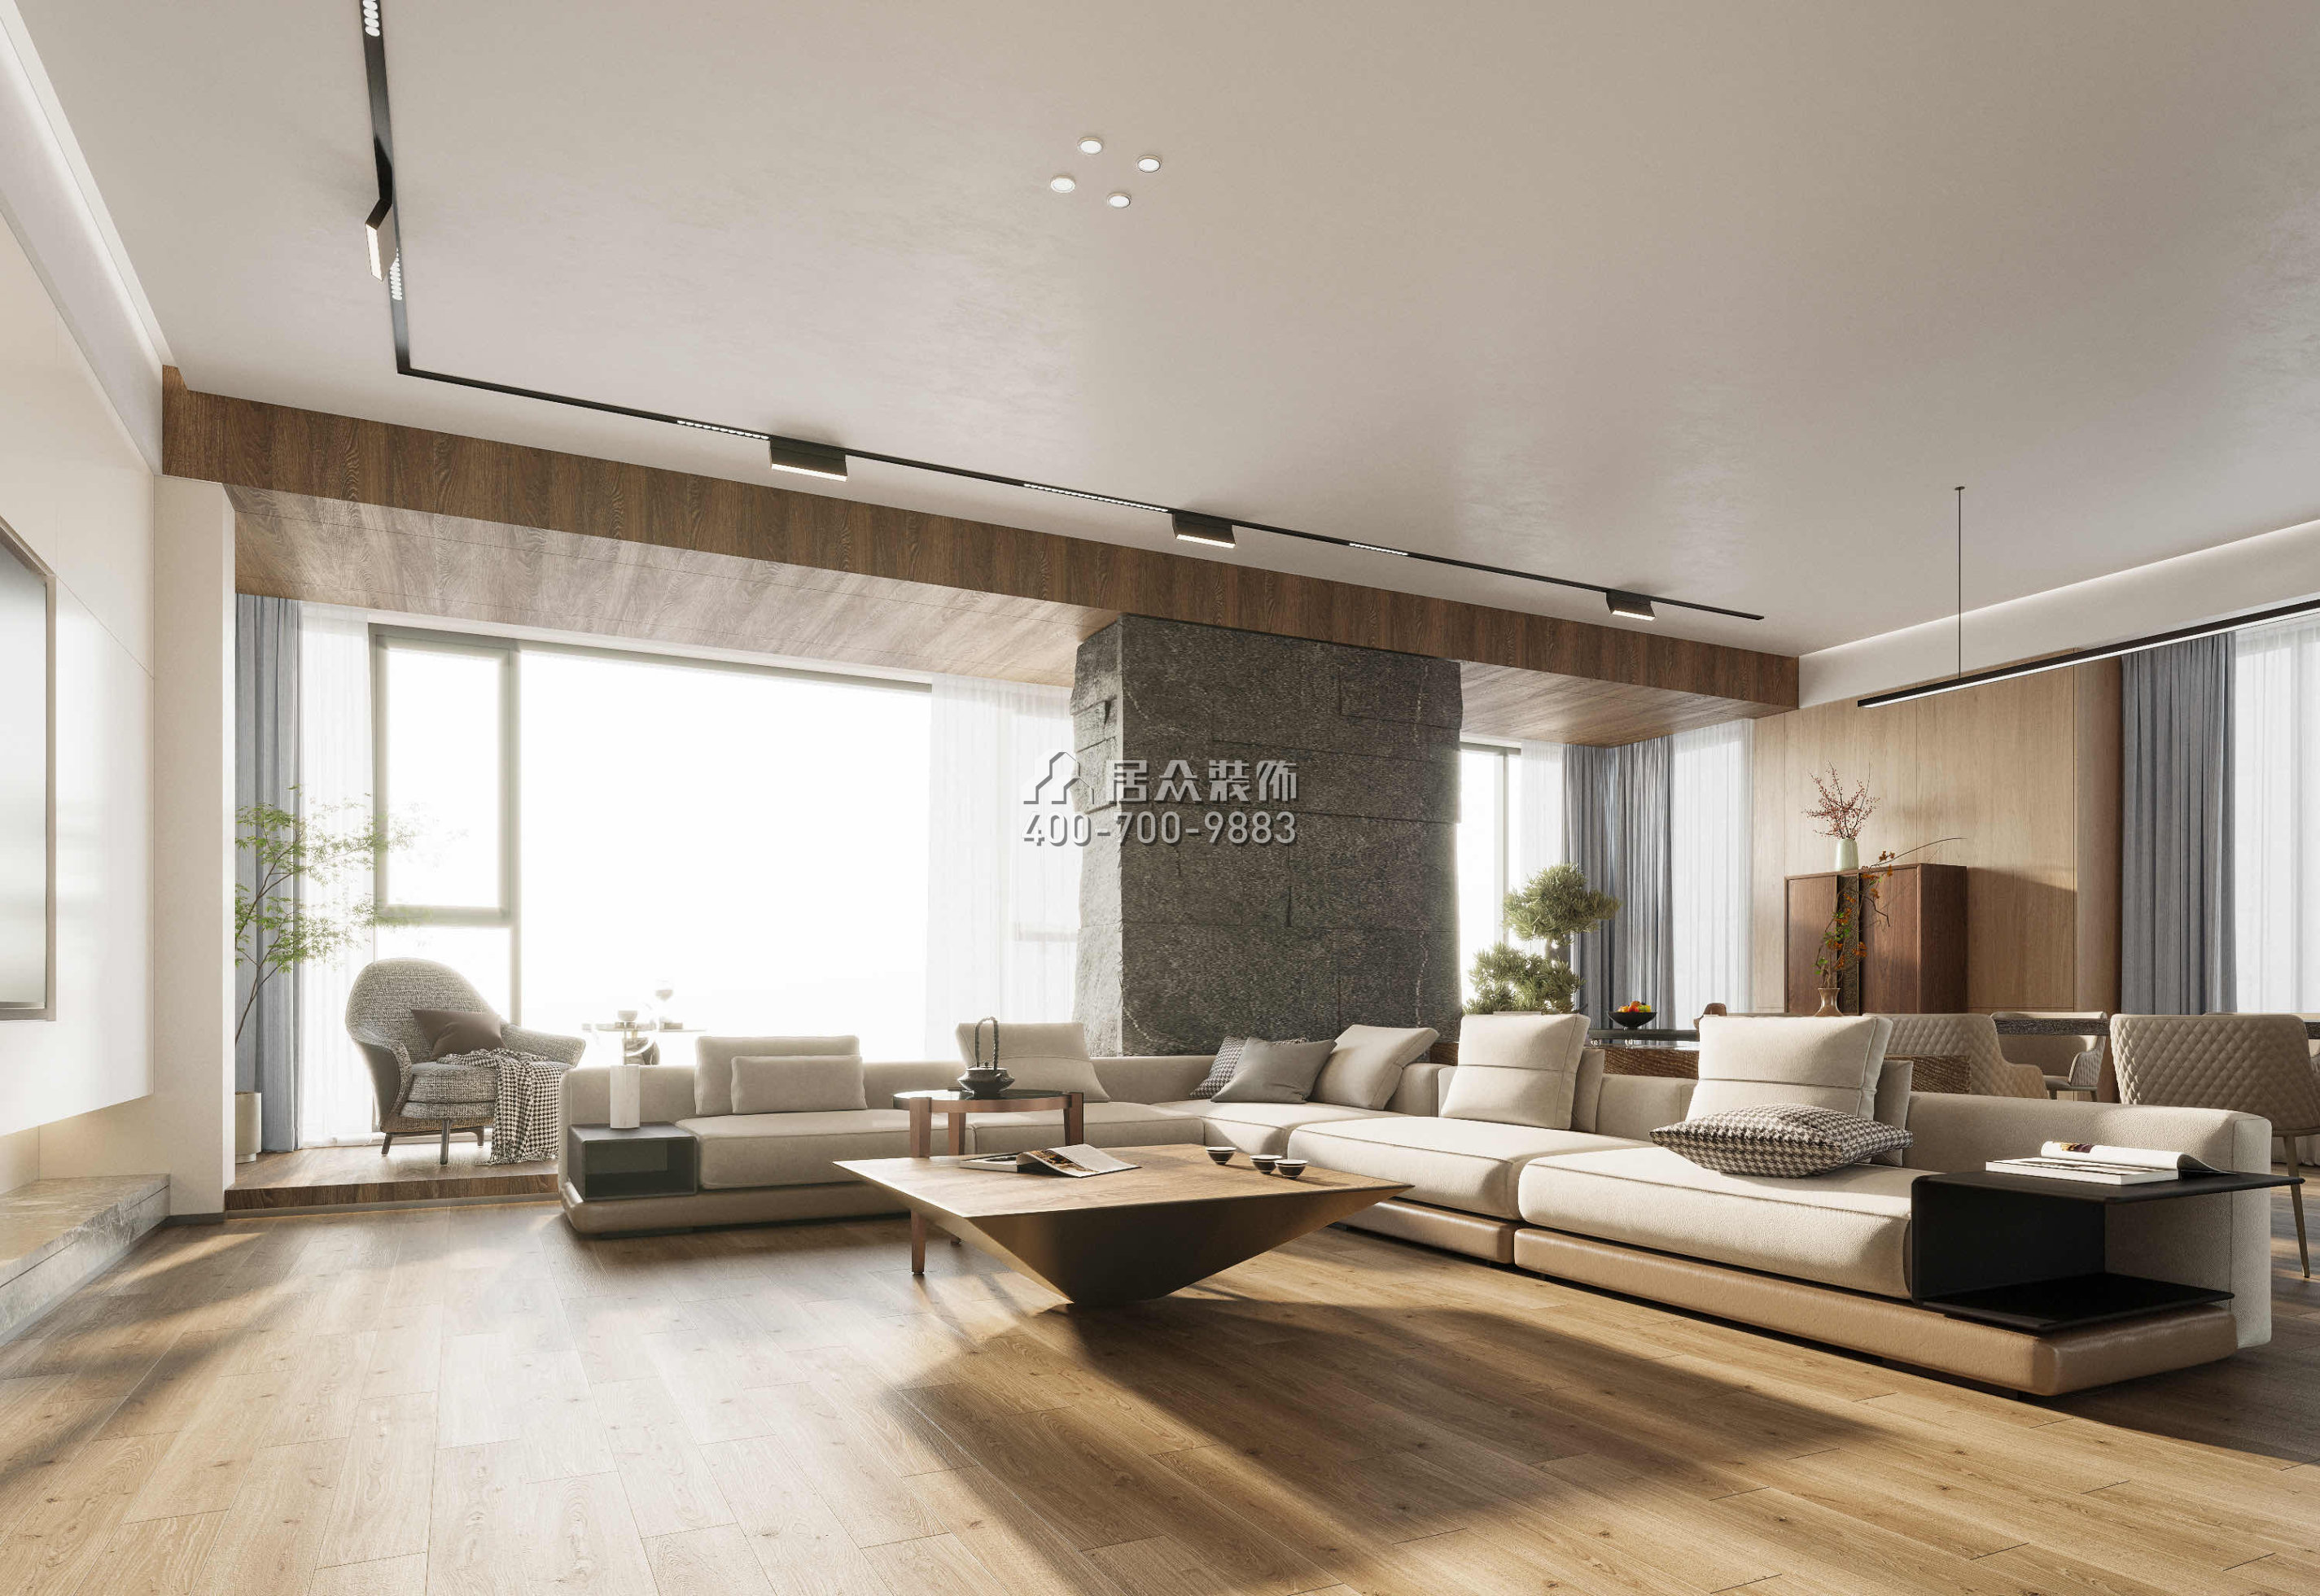 藏瓏湖上國際412平方米現代簡約風格平層戶型客廳裝修效果圖